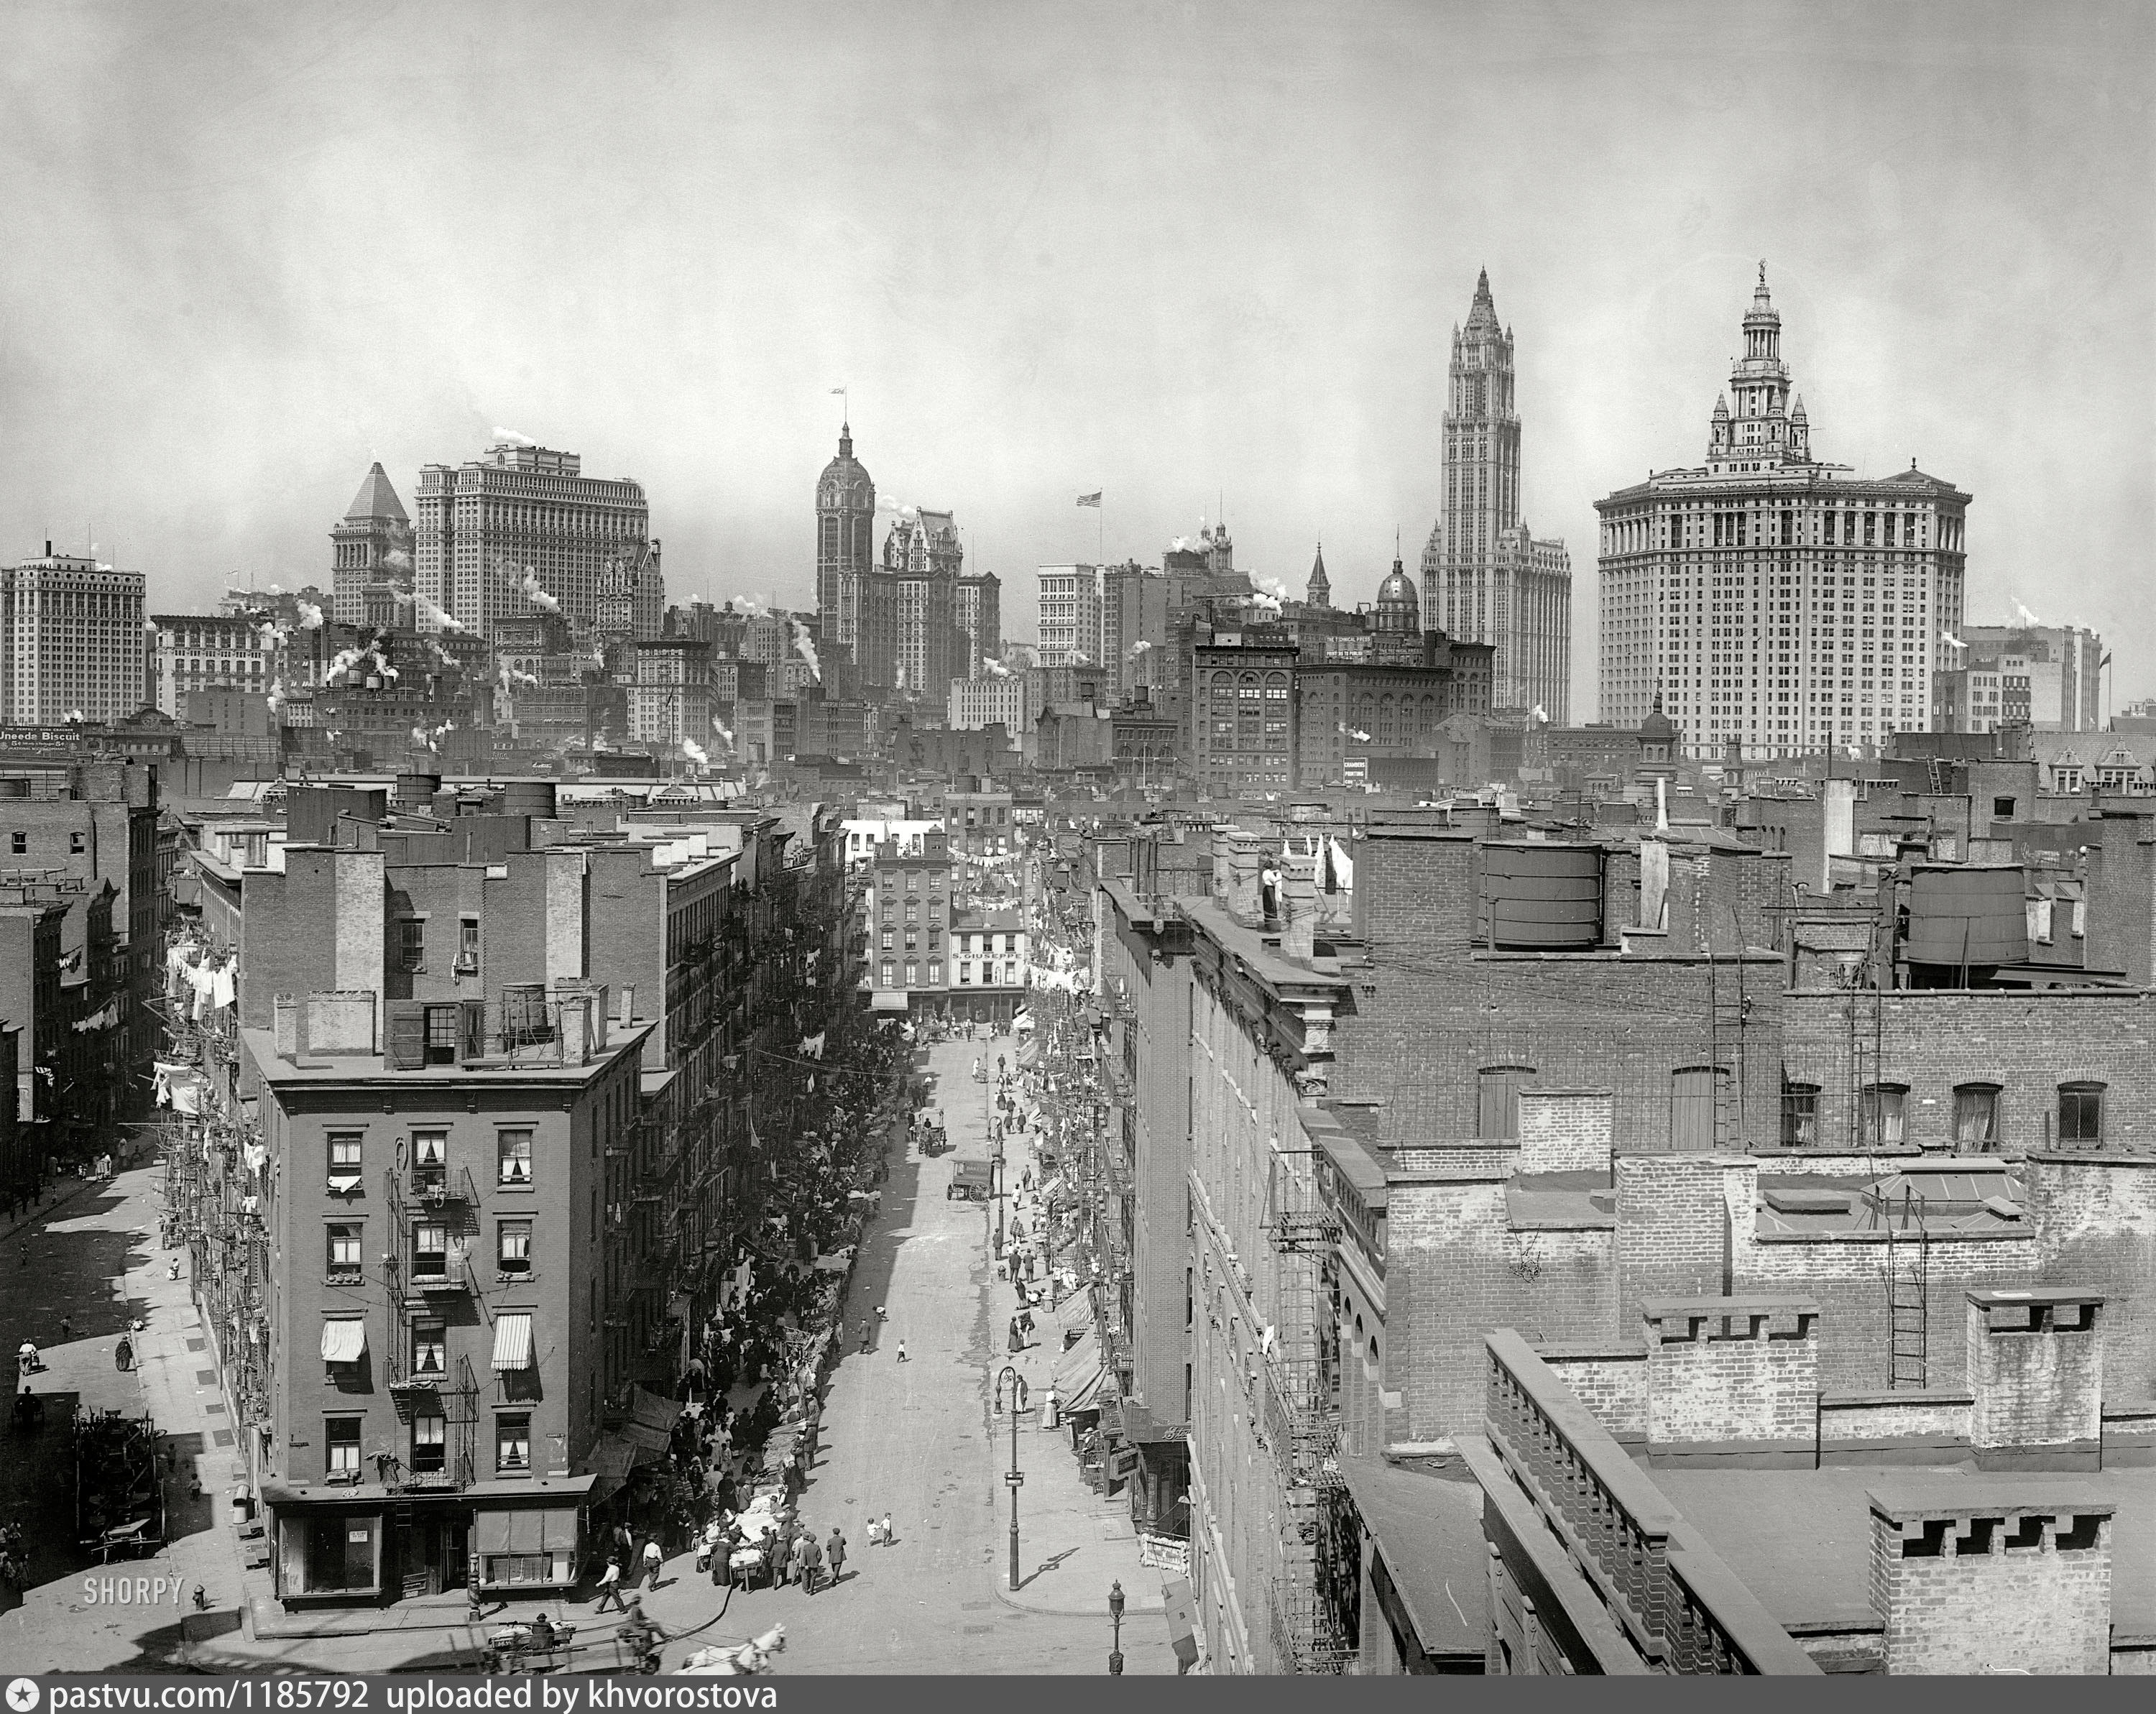 Сша 1900 года. Нью Йорк 20 век. Нью Йорк в 20 веке. Манхэттен Нью-Йорка 1900 года. Нью Йорк 20 век Манхэттен.